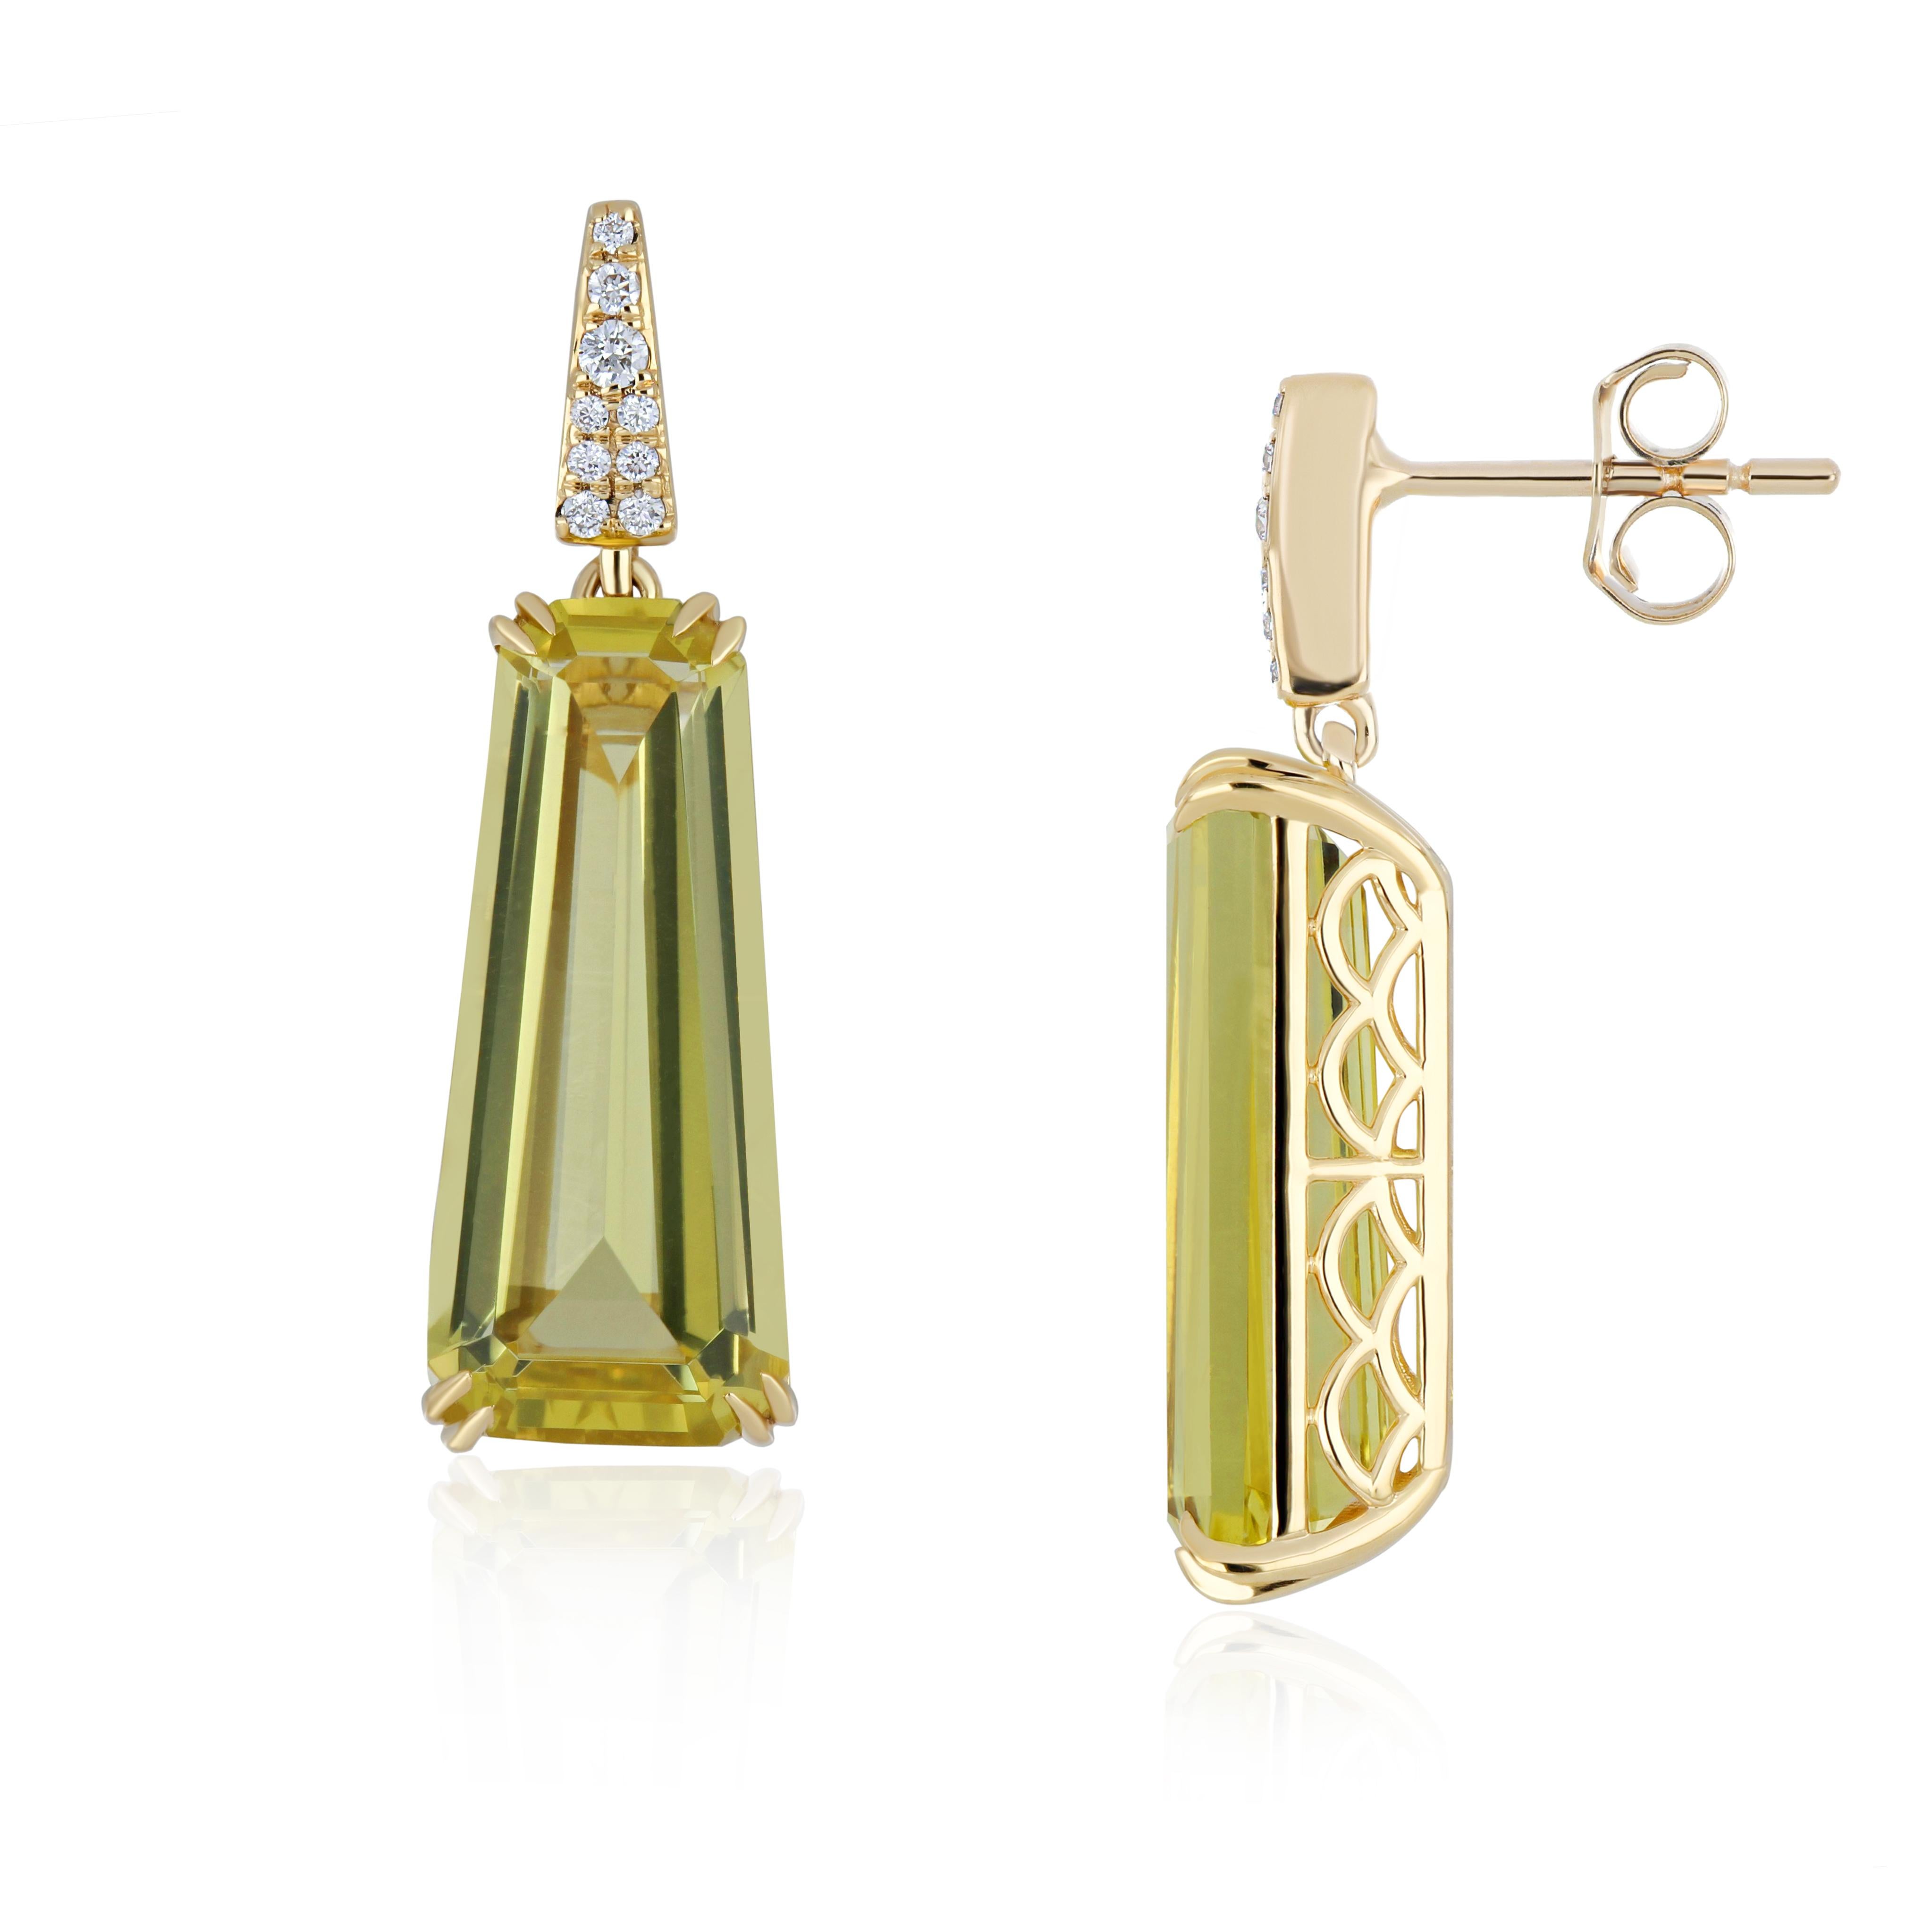 Exquisite Lemon Quartz & Diamond Studded Pedant & Earrings Set in 18 K Gold For Sale 3